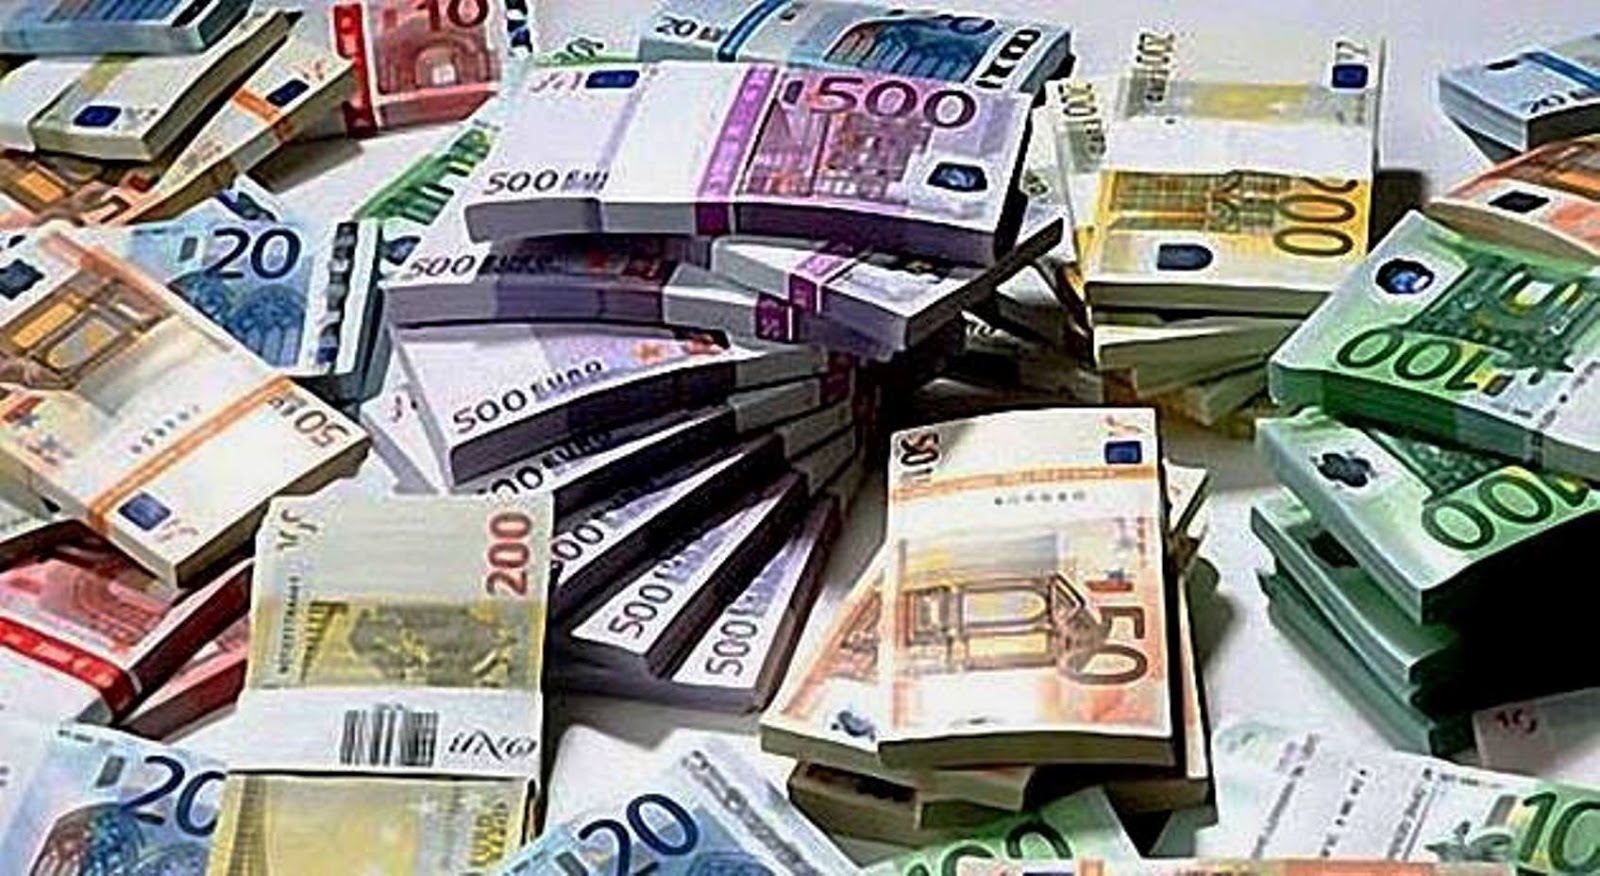 Ε.Π.Κ.Κρήτης: Βόμβα για την Τραπεζα, αλλά και  βάλσαμογια πέντε δανειολήπτες το κούρεμα του χρέους τους κατά 850.000 ευρώ - Φωτογραφία 1